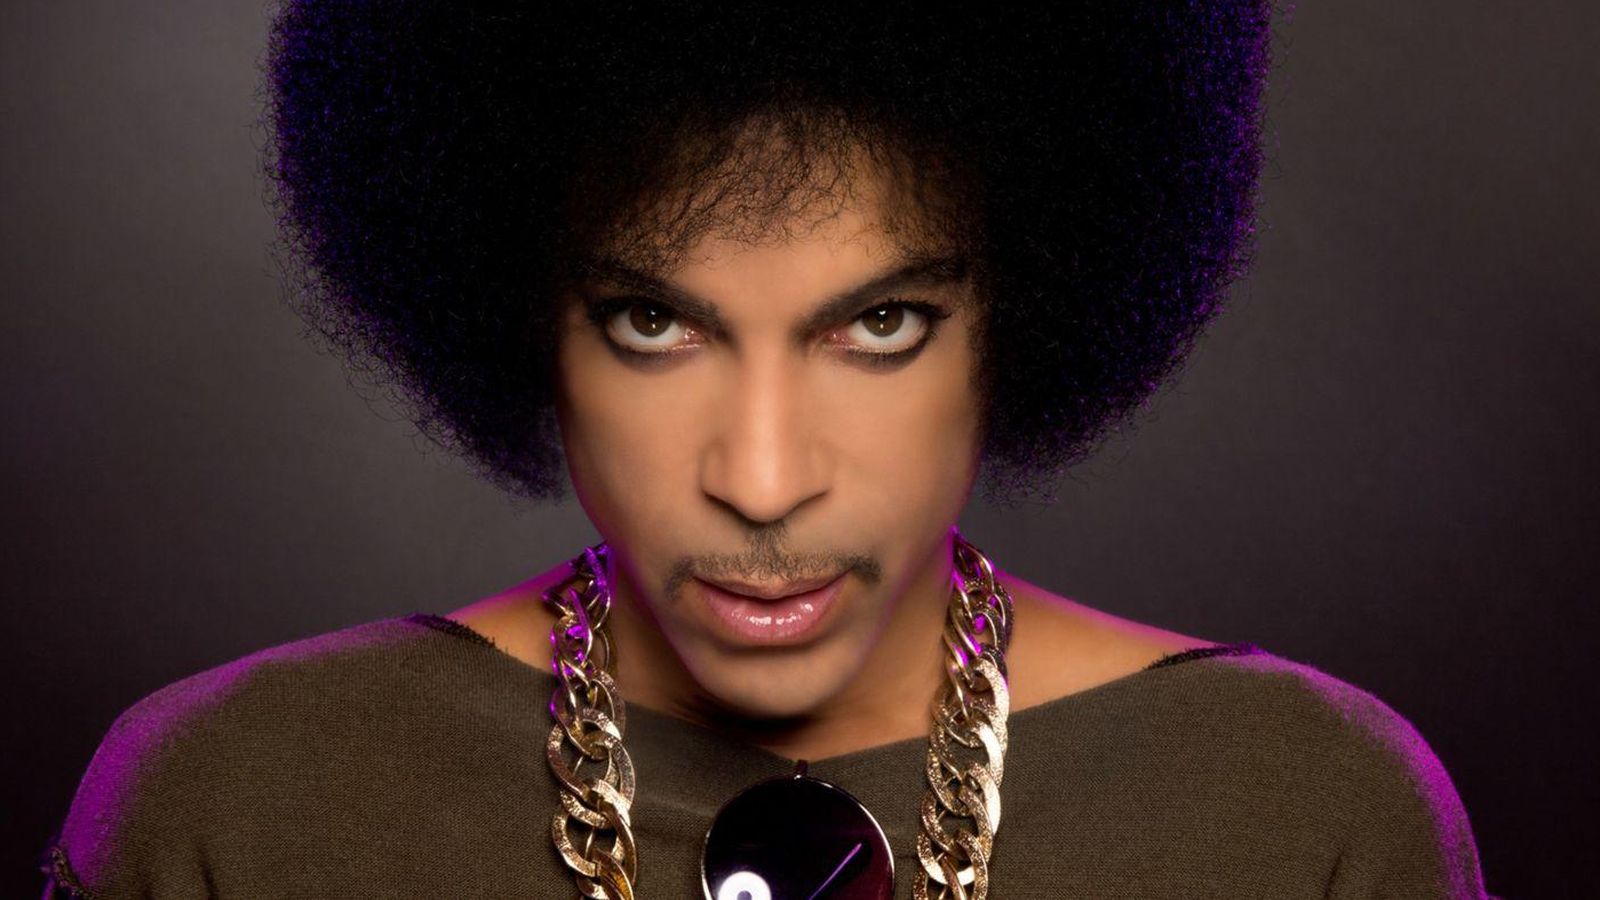 Foto: El cantante Prince en una imagen de archivo (Gtres)